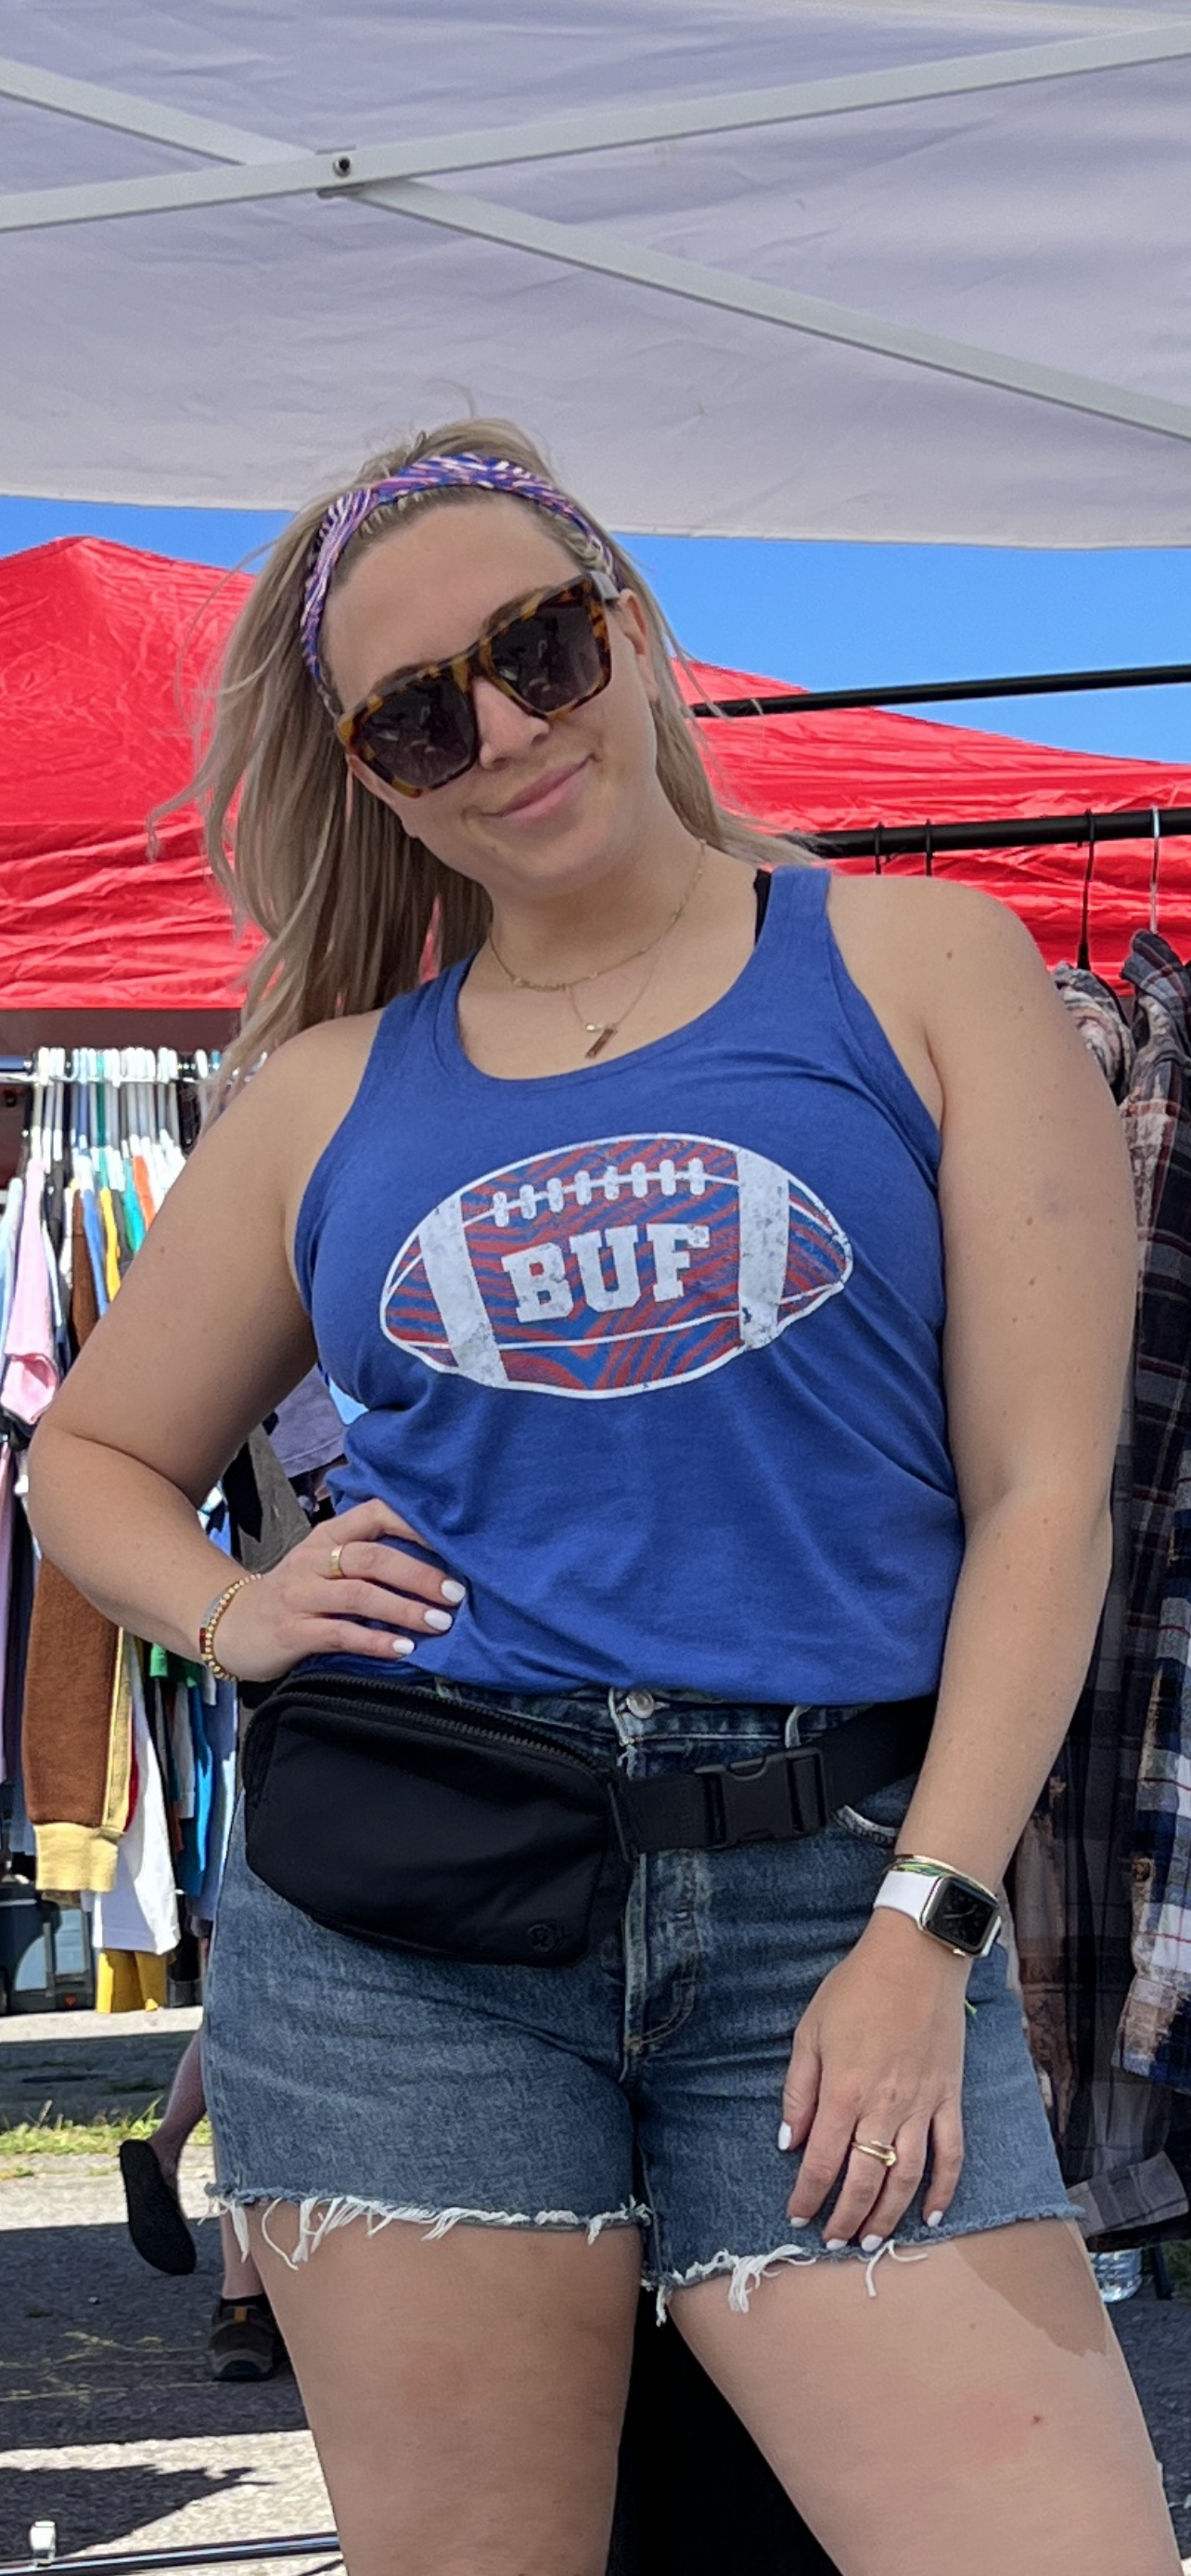 Buffalo Zubaz Football Tank Top